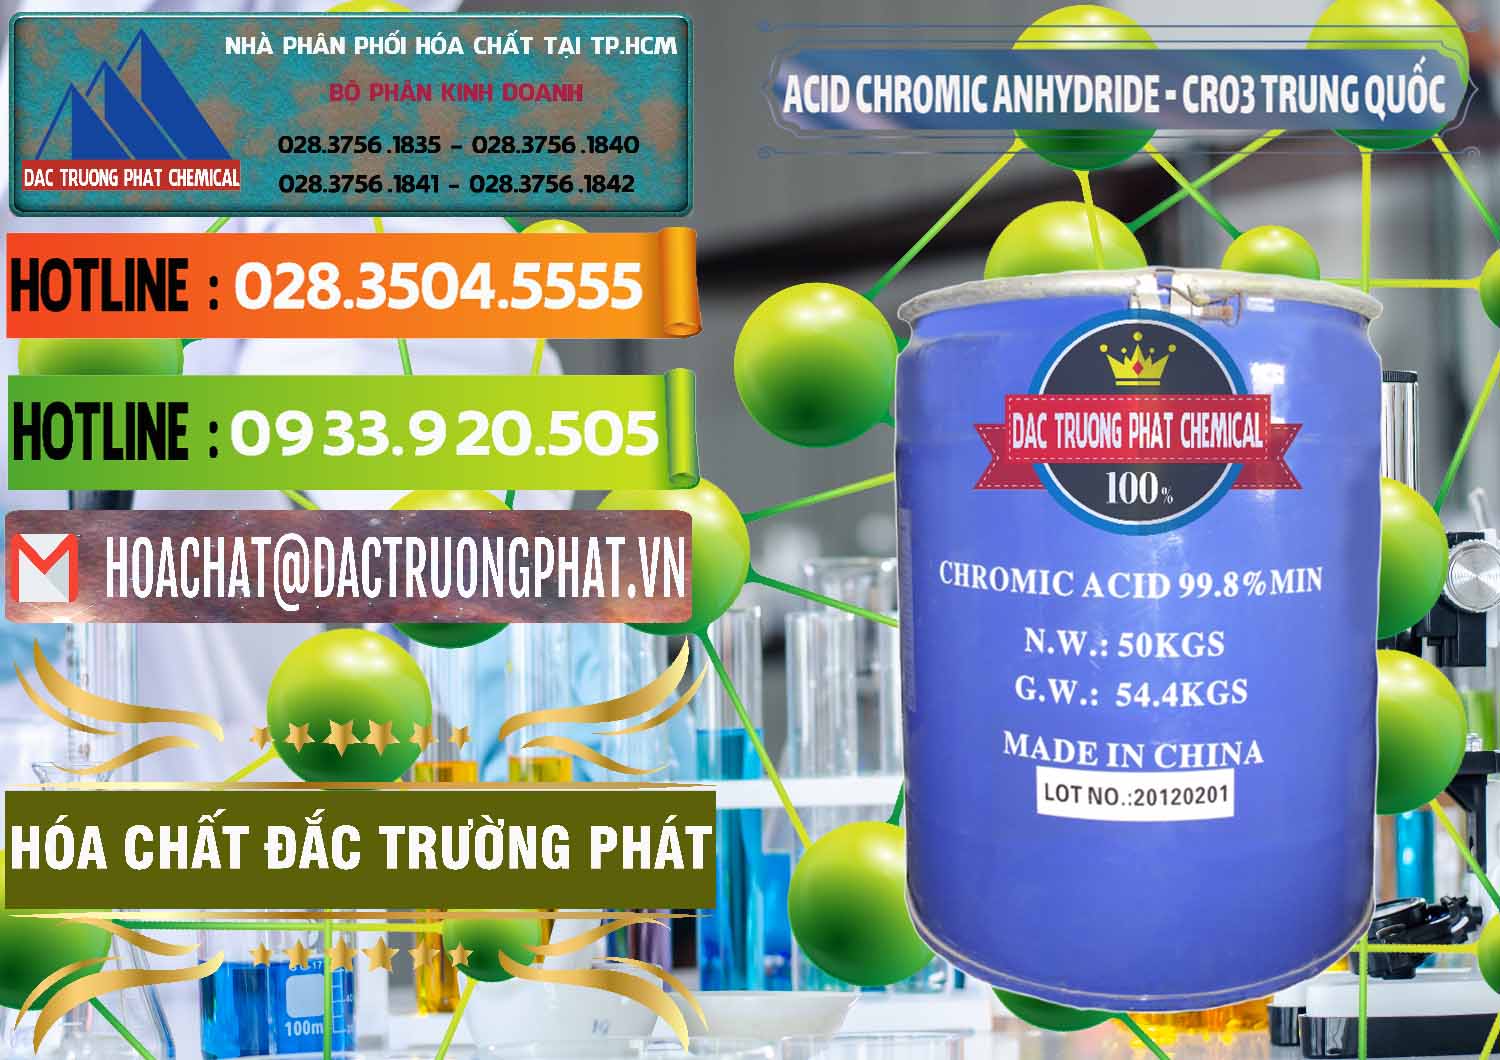 Nơi chuyên kinh doanh & bán Acid Chromic Anhydride - Cromic CRO3 Trung Quốc China - 0007 - Cung cấp ( kinh doanh ) hóa chất tại TP.HCM - cungcaphoachat.com.vn